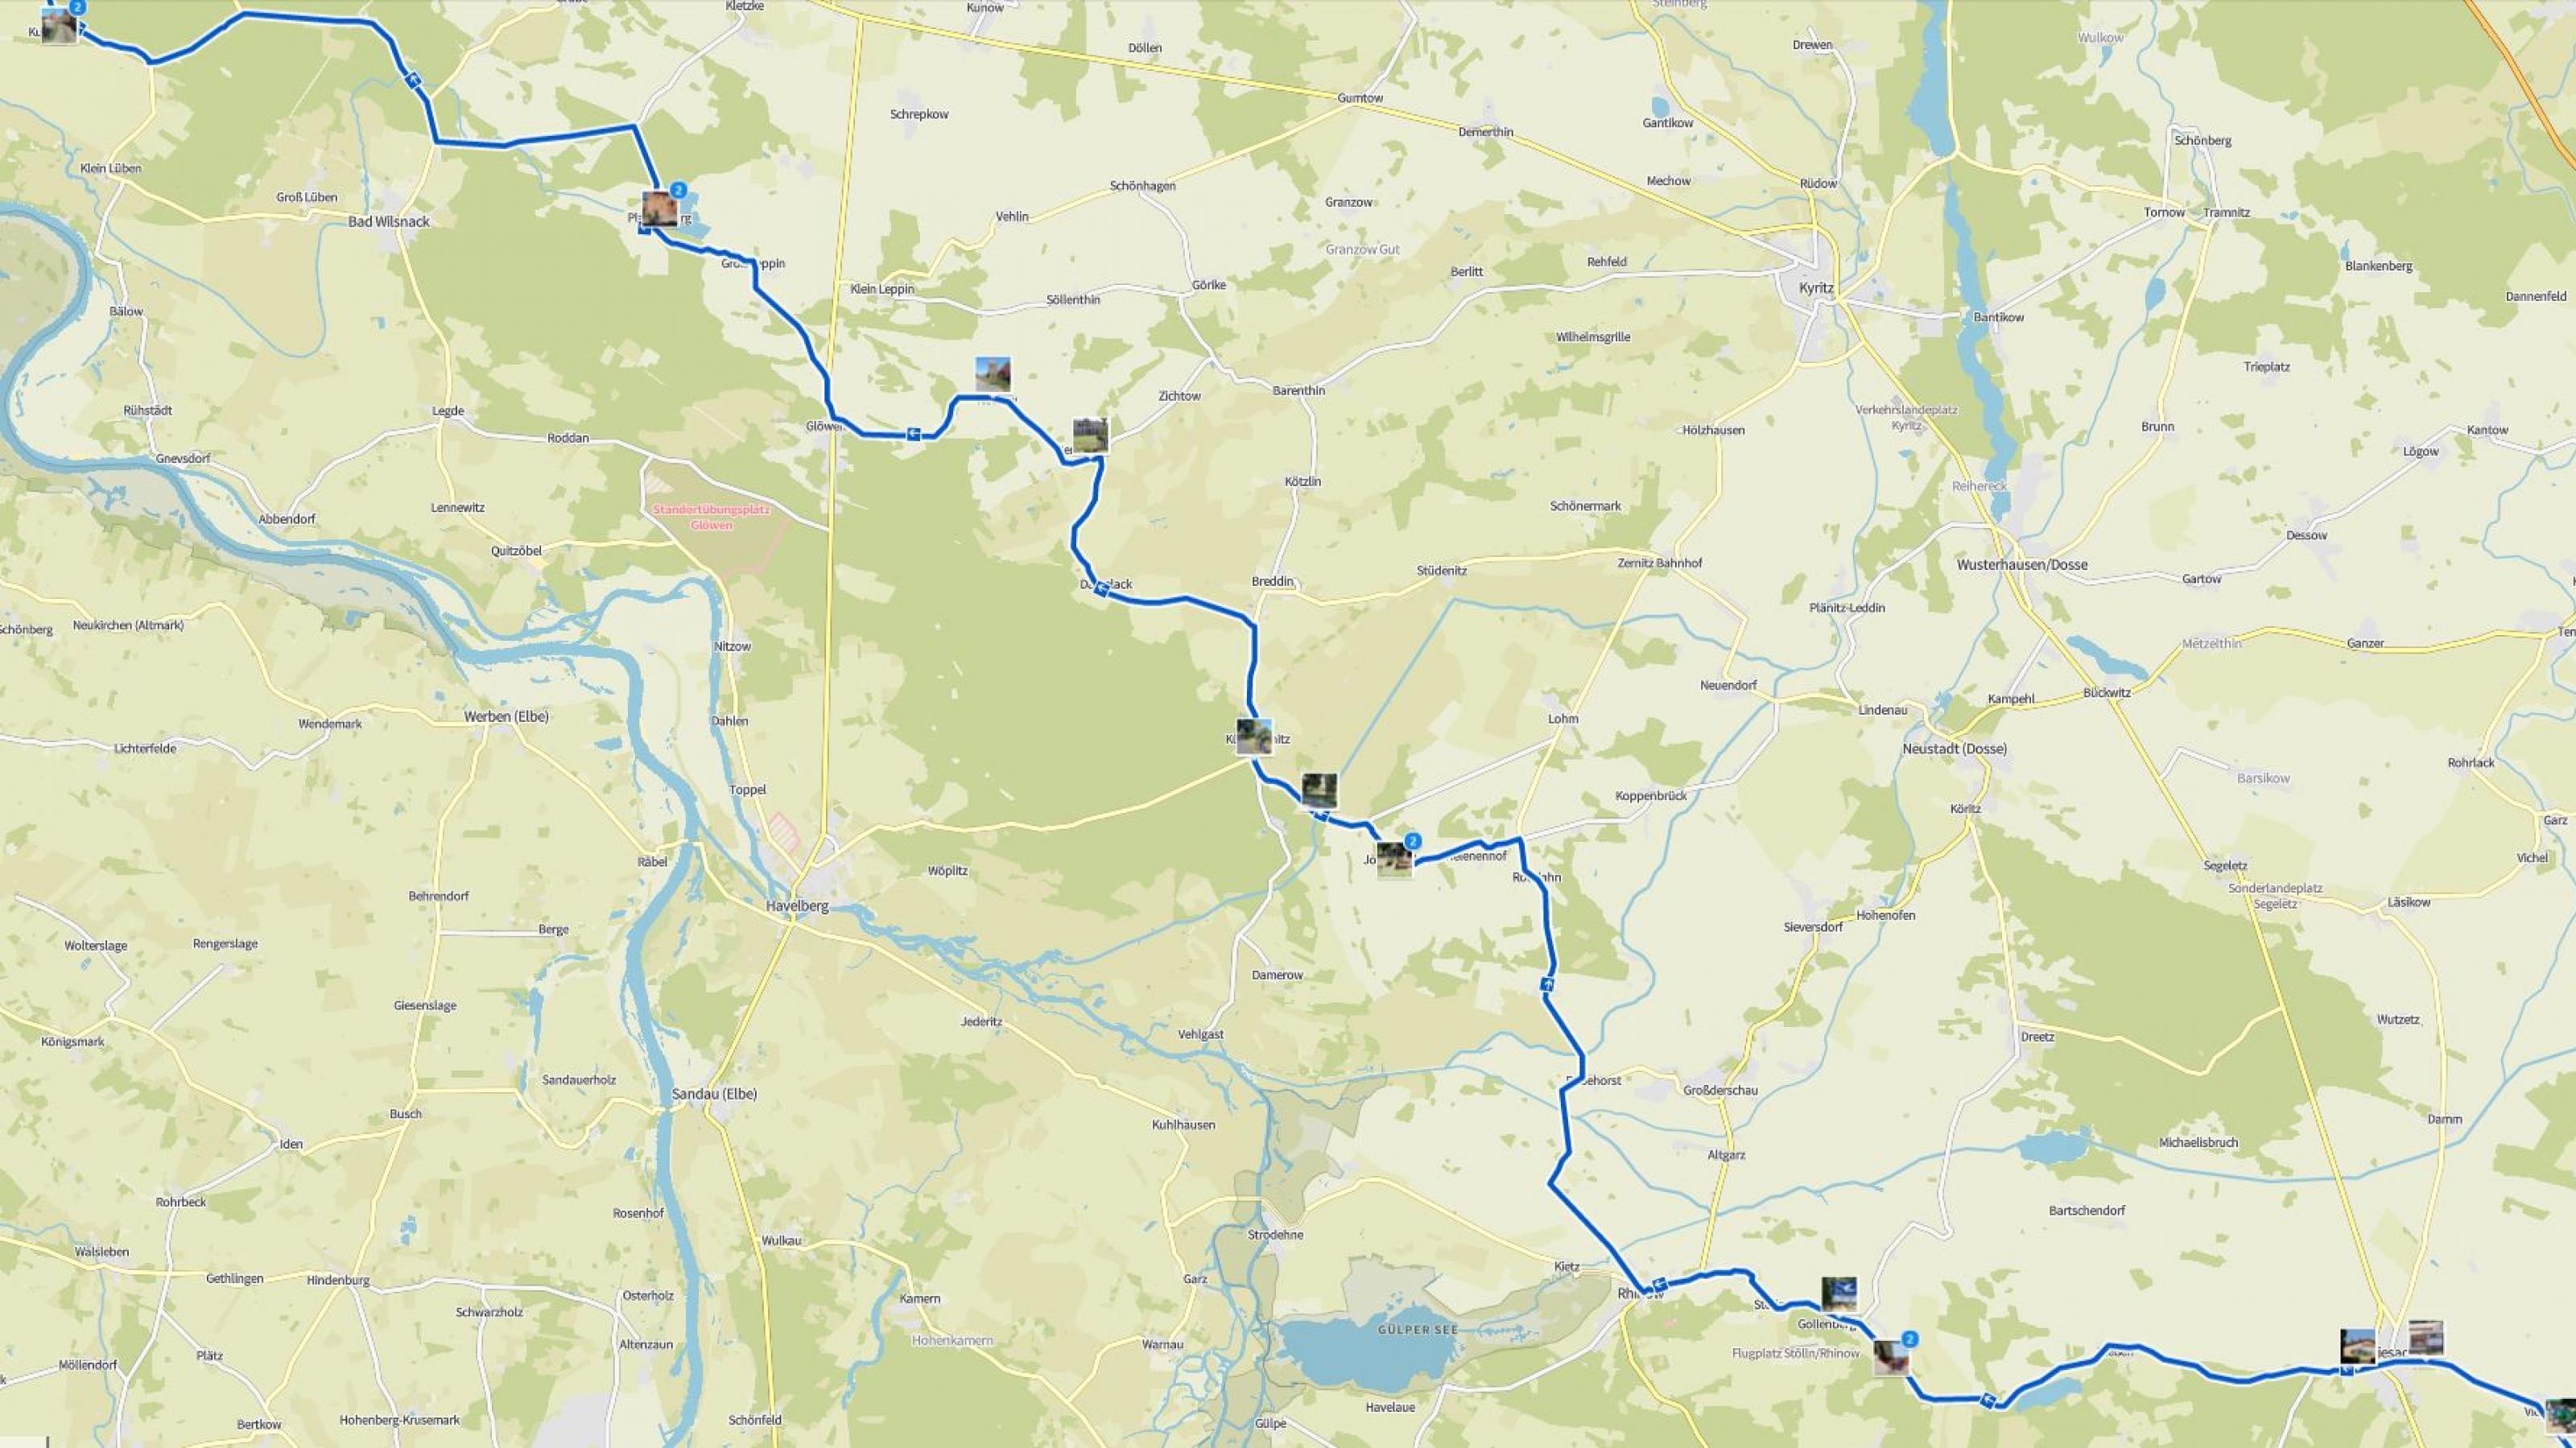 Landkarte mit der Reiseroute des RadelndenReporters, auf der die Fotostationen vermerkt sind.